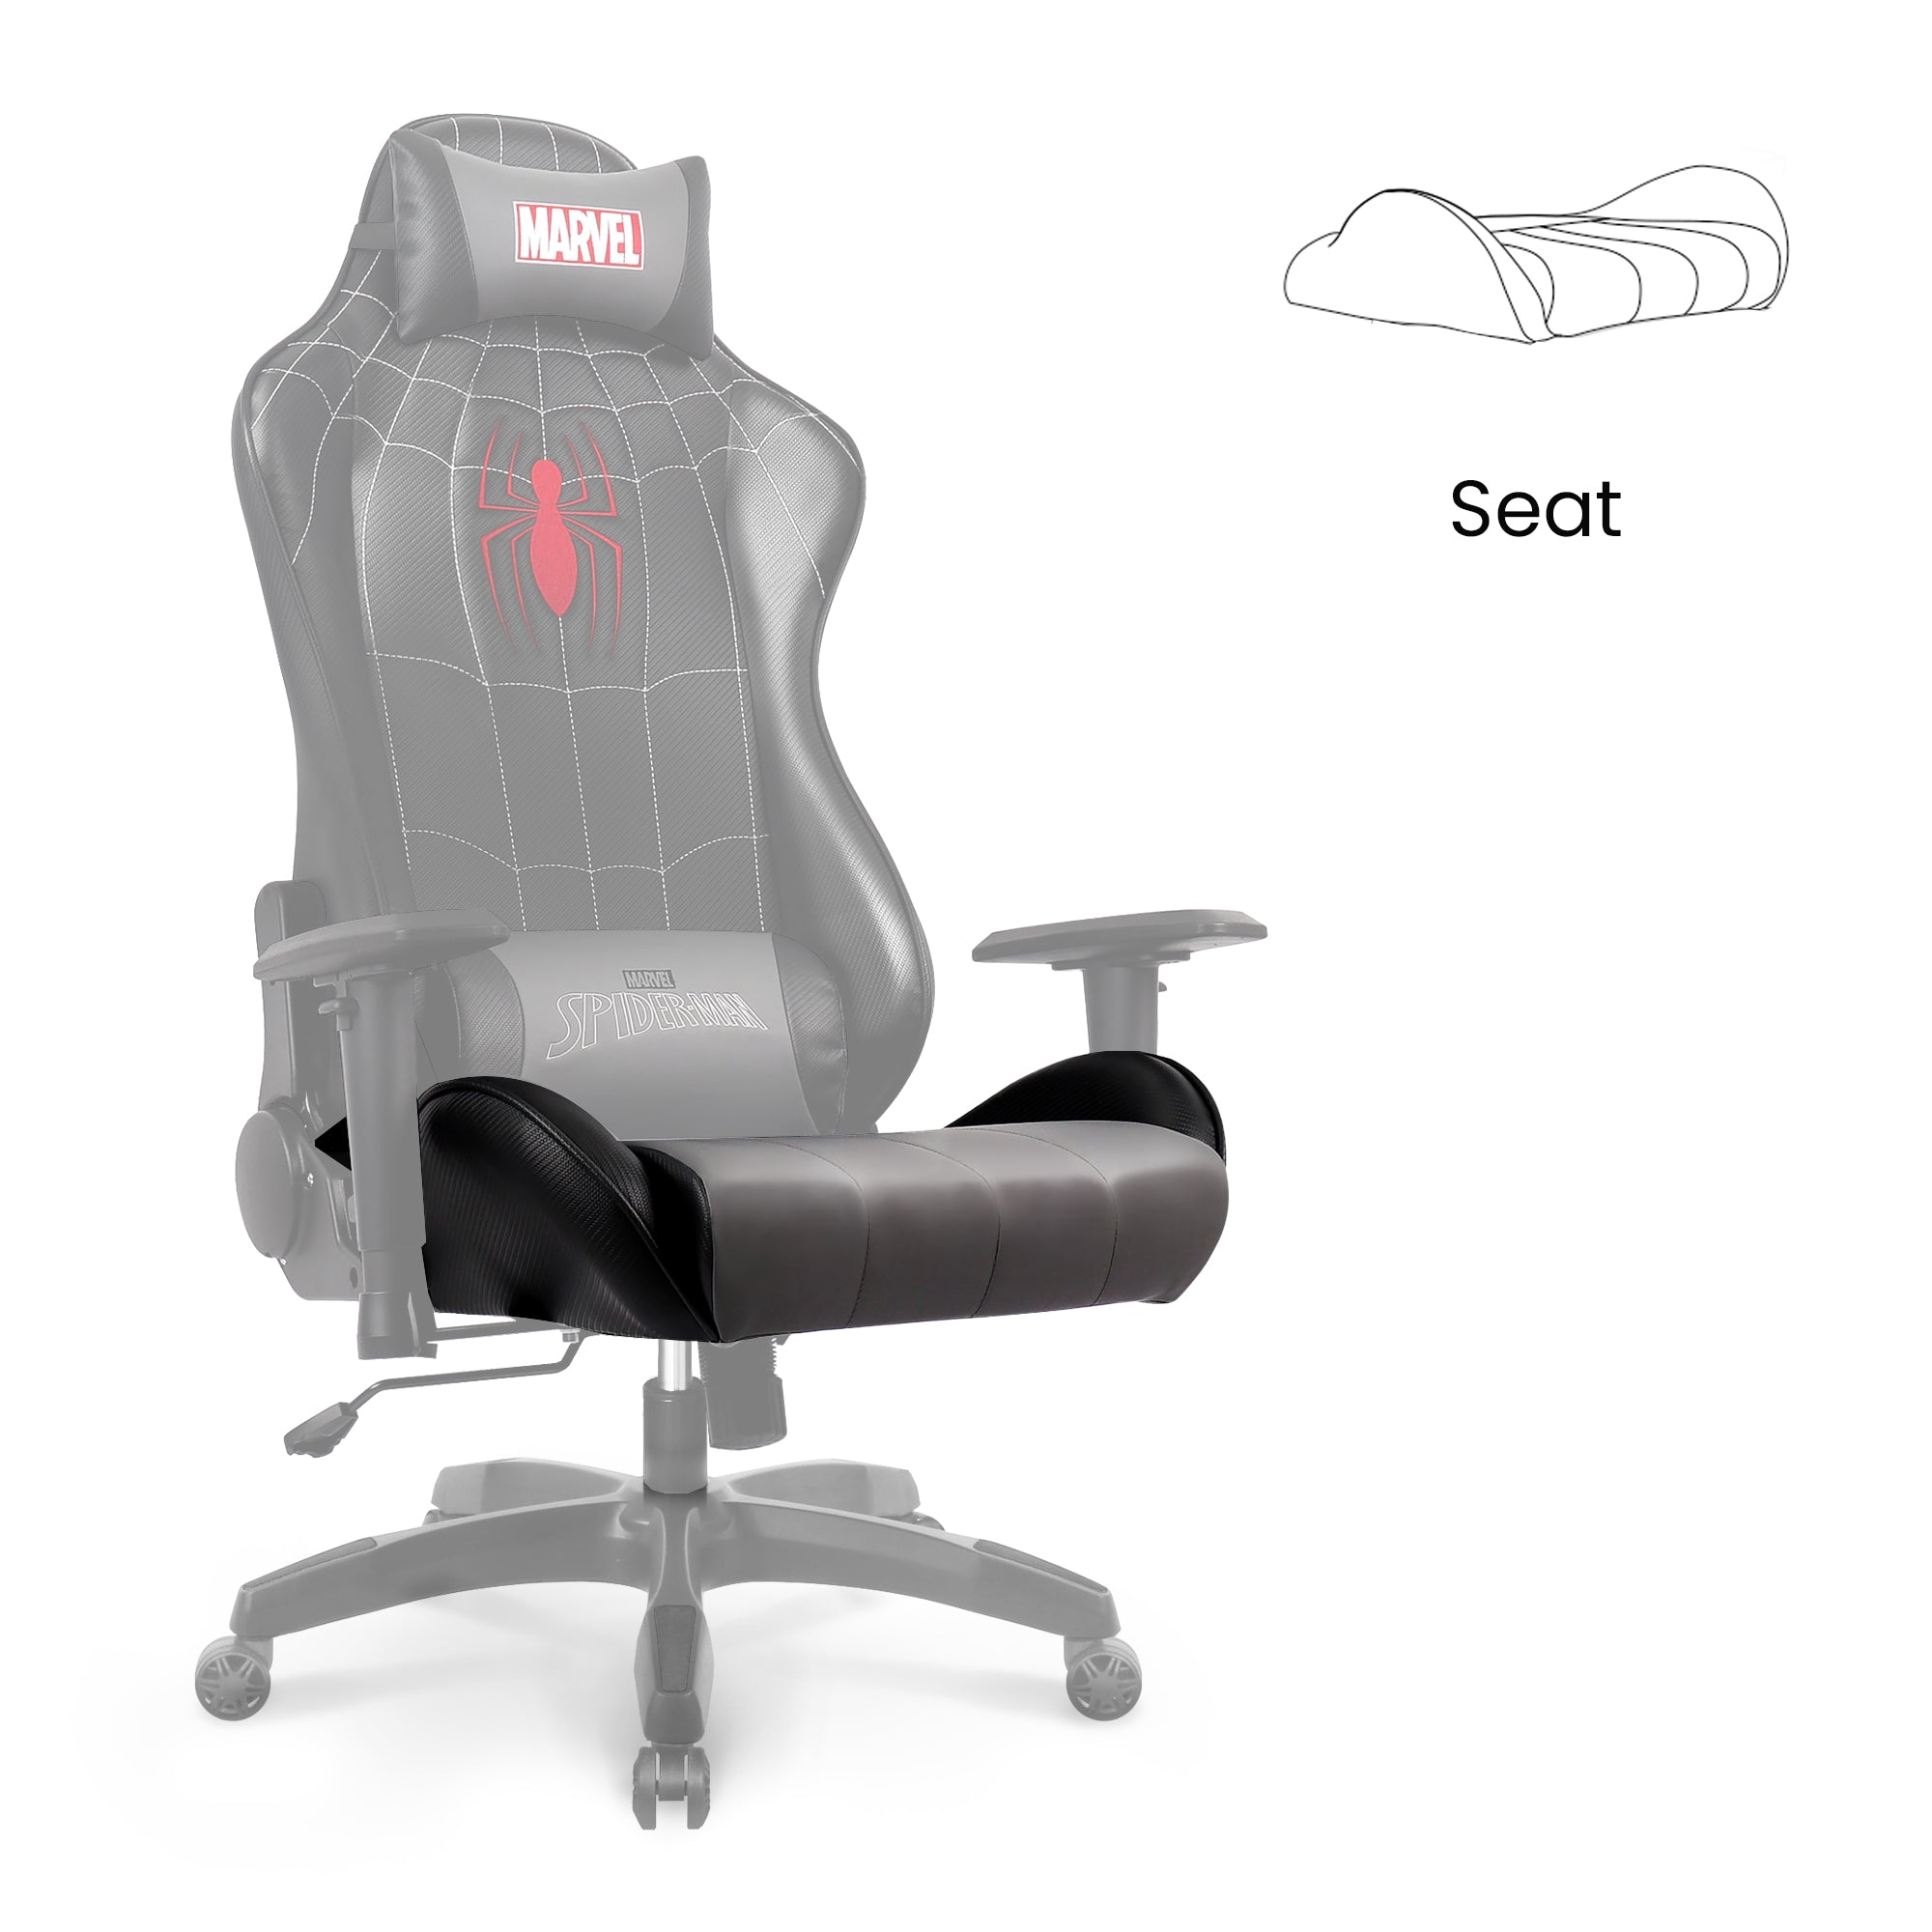 [part] ARC, ARC-R Seat